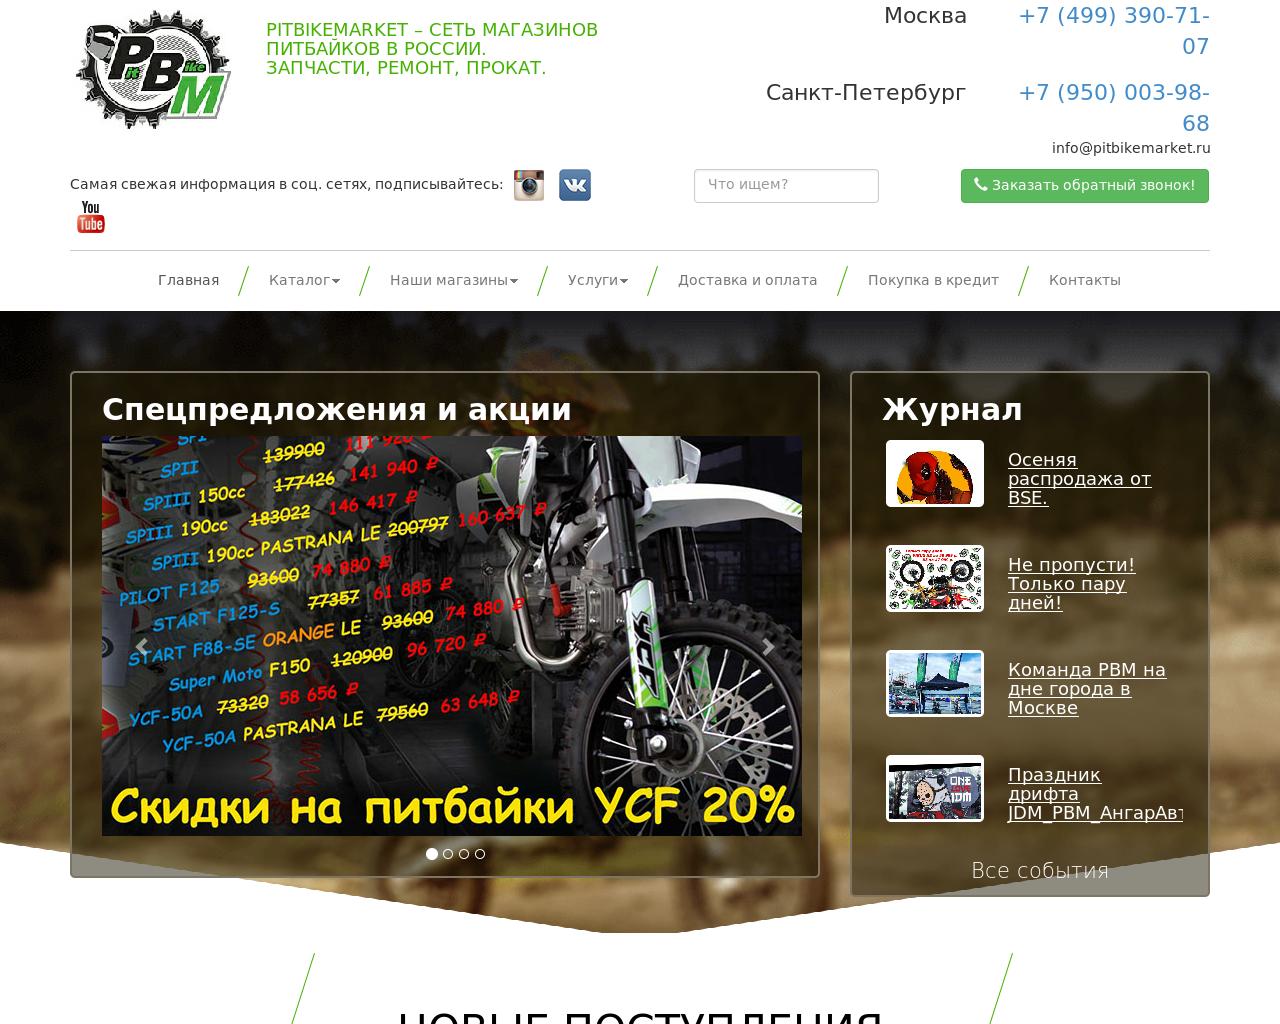 Изображение сайта pitbikemarket.ru в разрешении 1280x1024